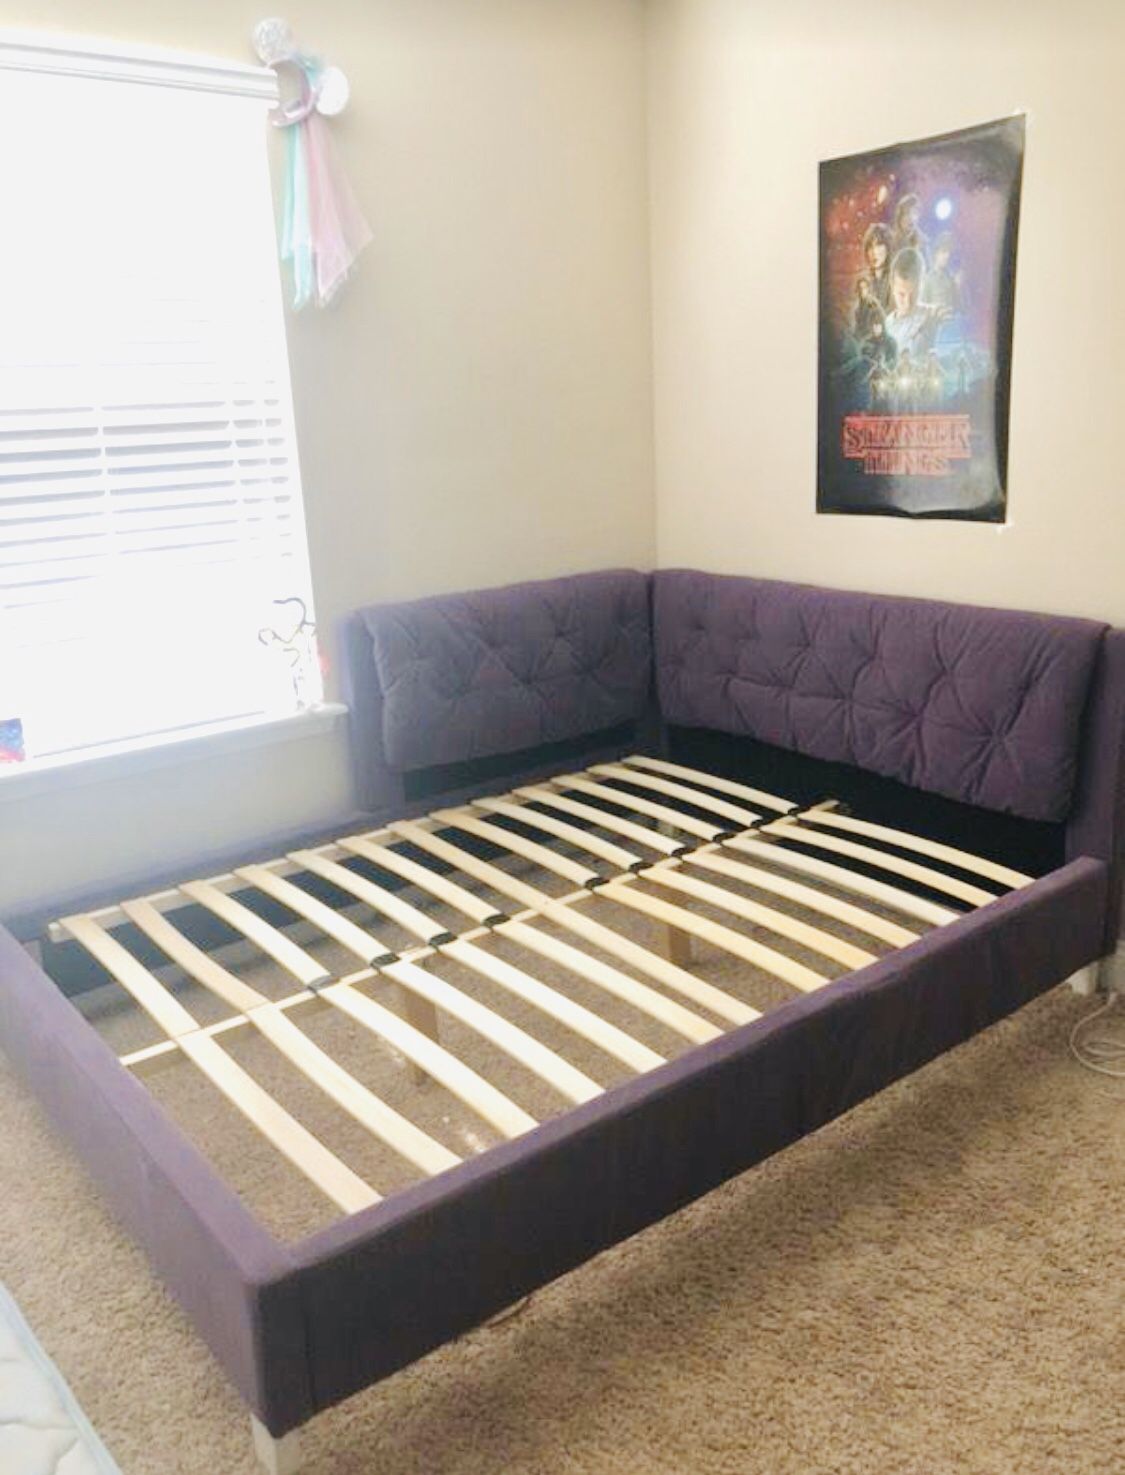 Full corner bed